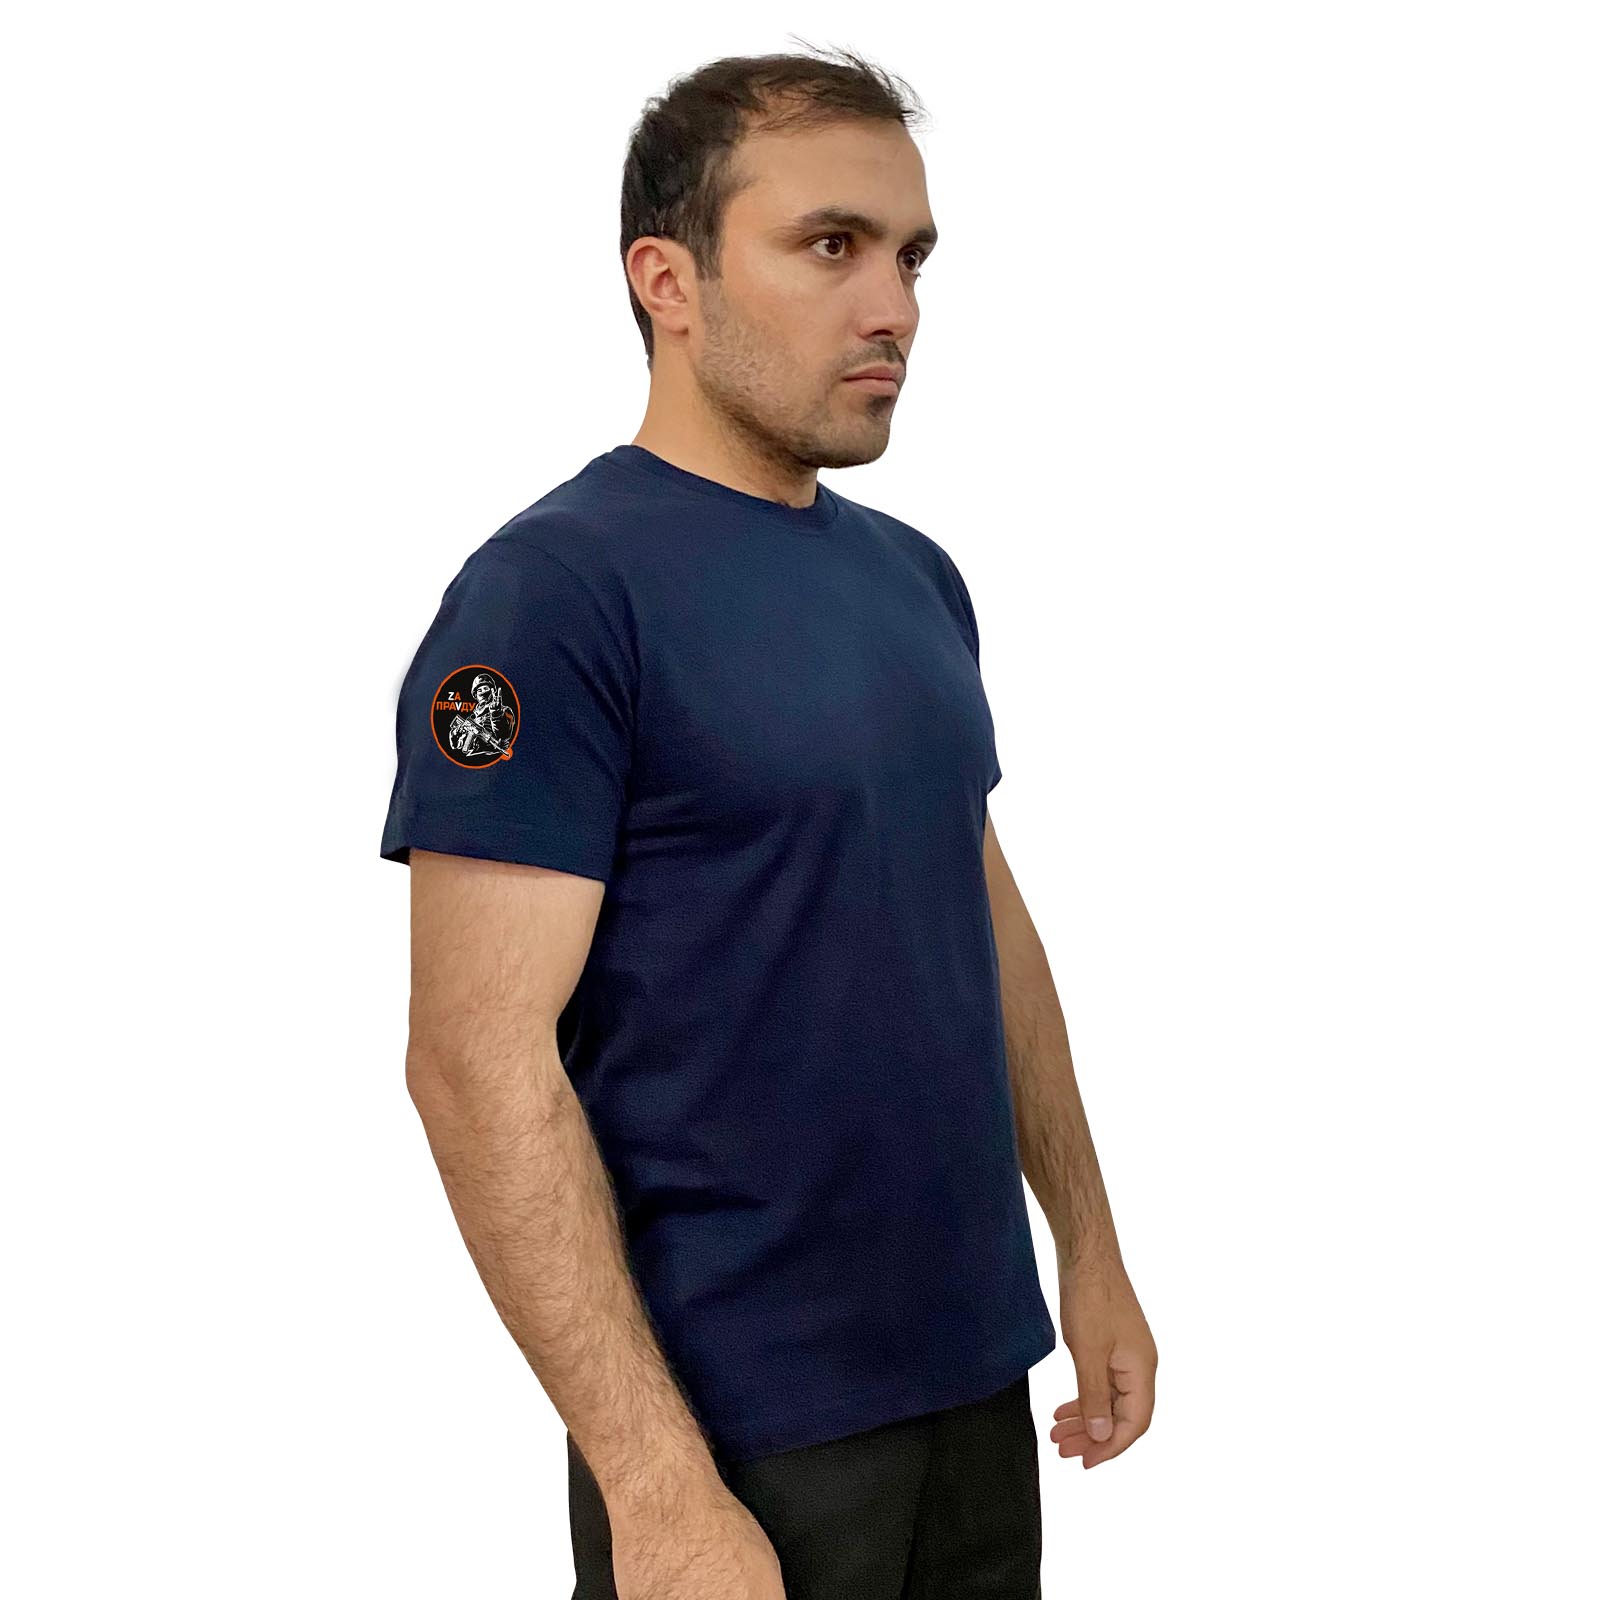 Тёмно-синяя футболка с термопереводкой "Zа праVду" на рукаве